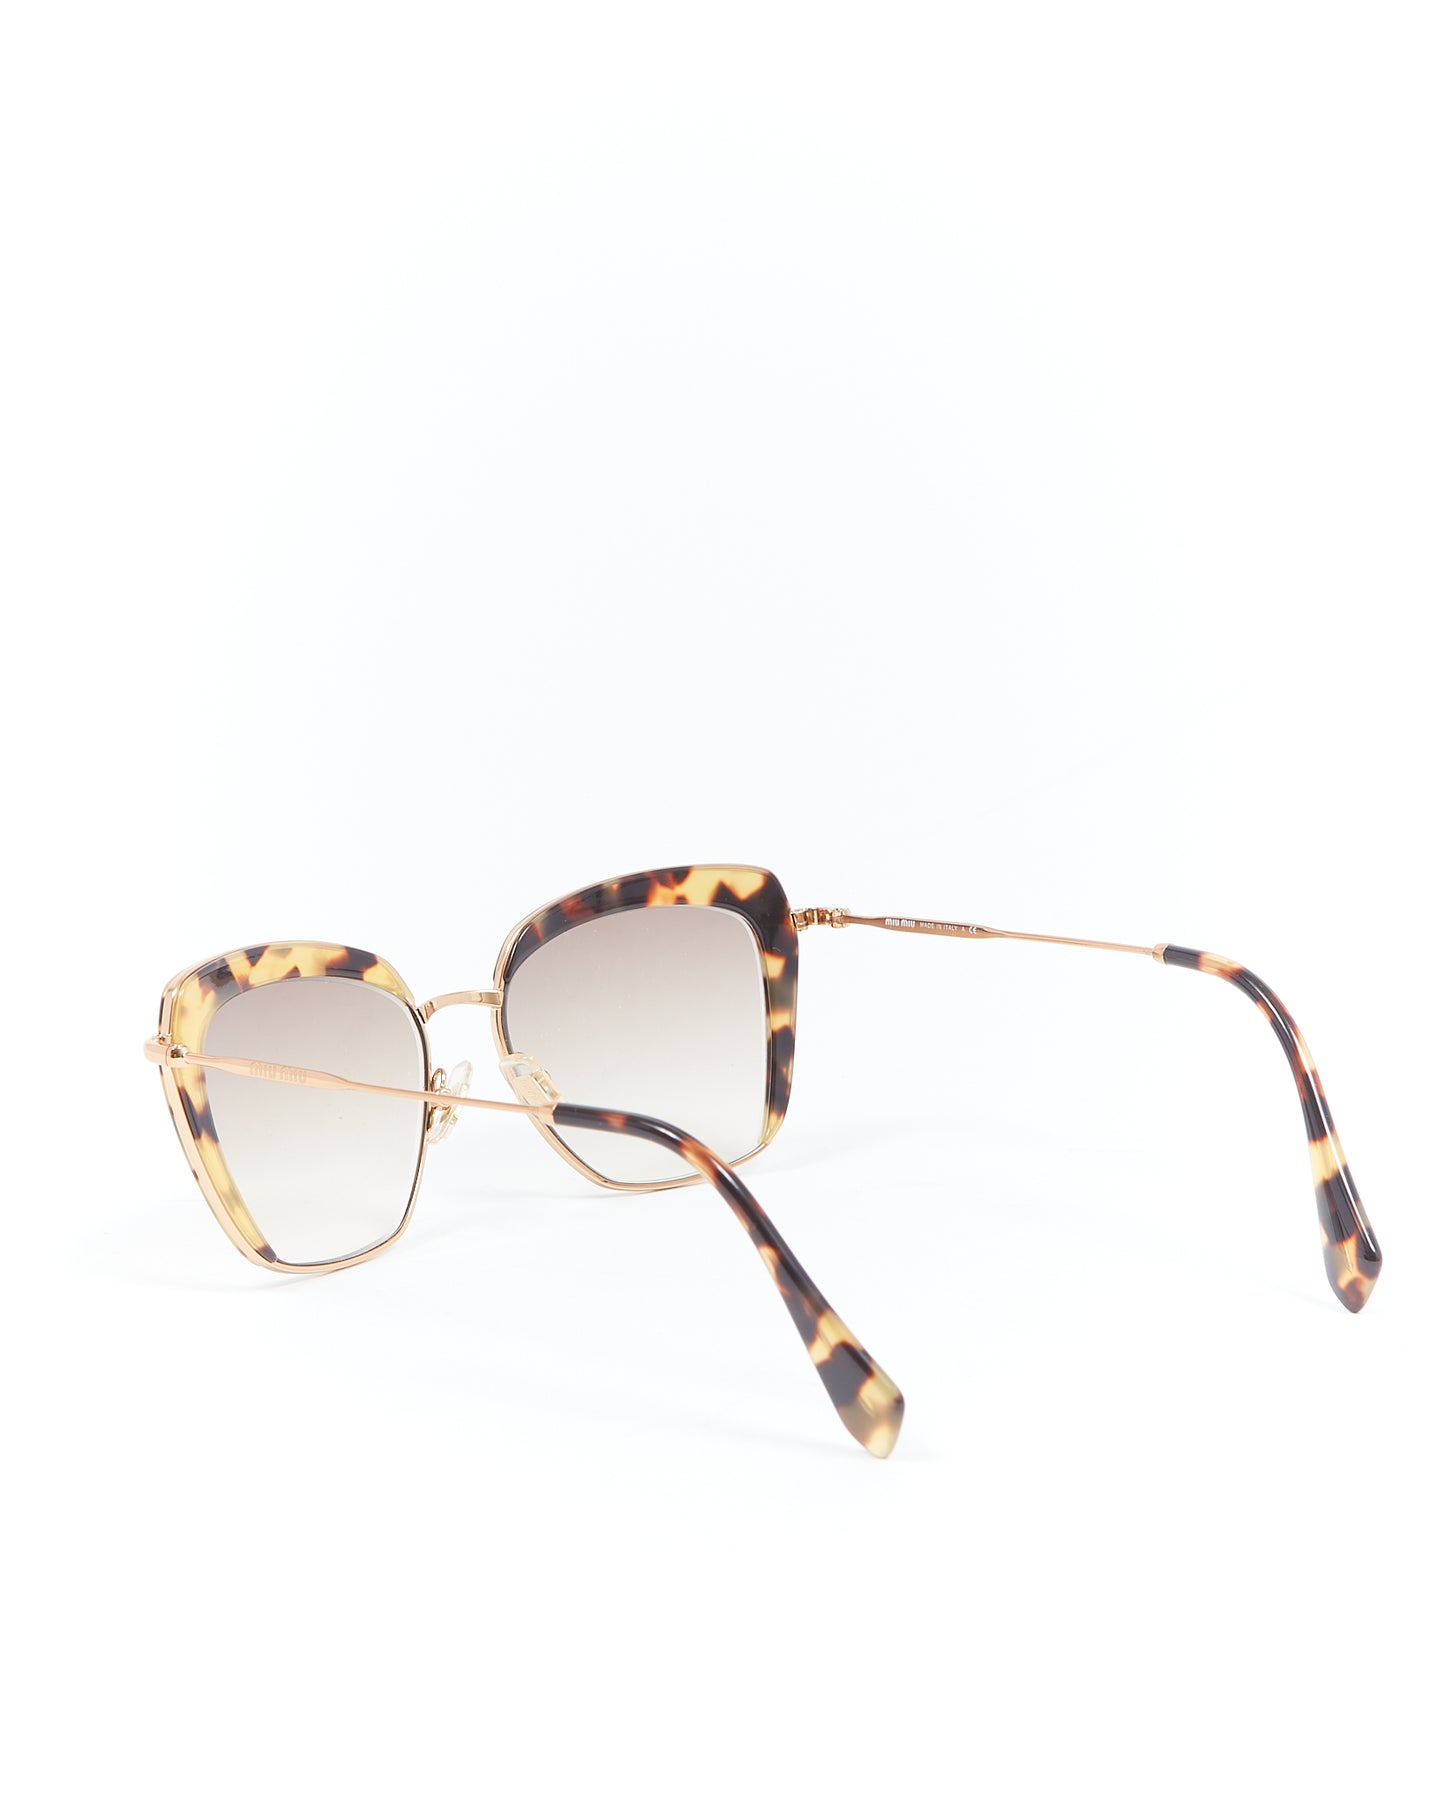 Miu Miu Light Tortoise Cat Eye SMU52Q Sunglasses